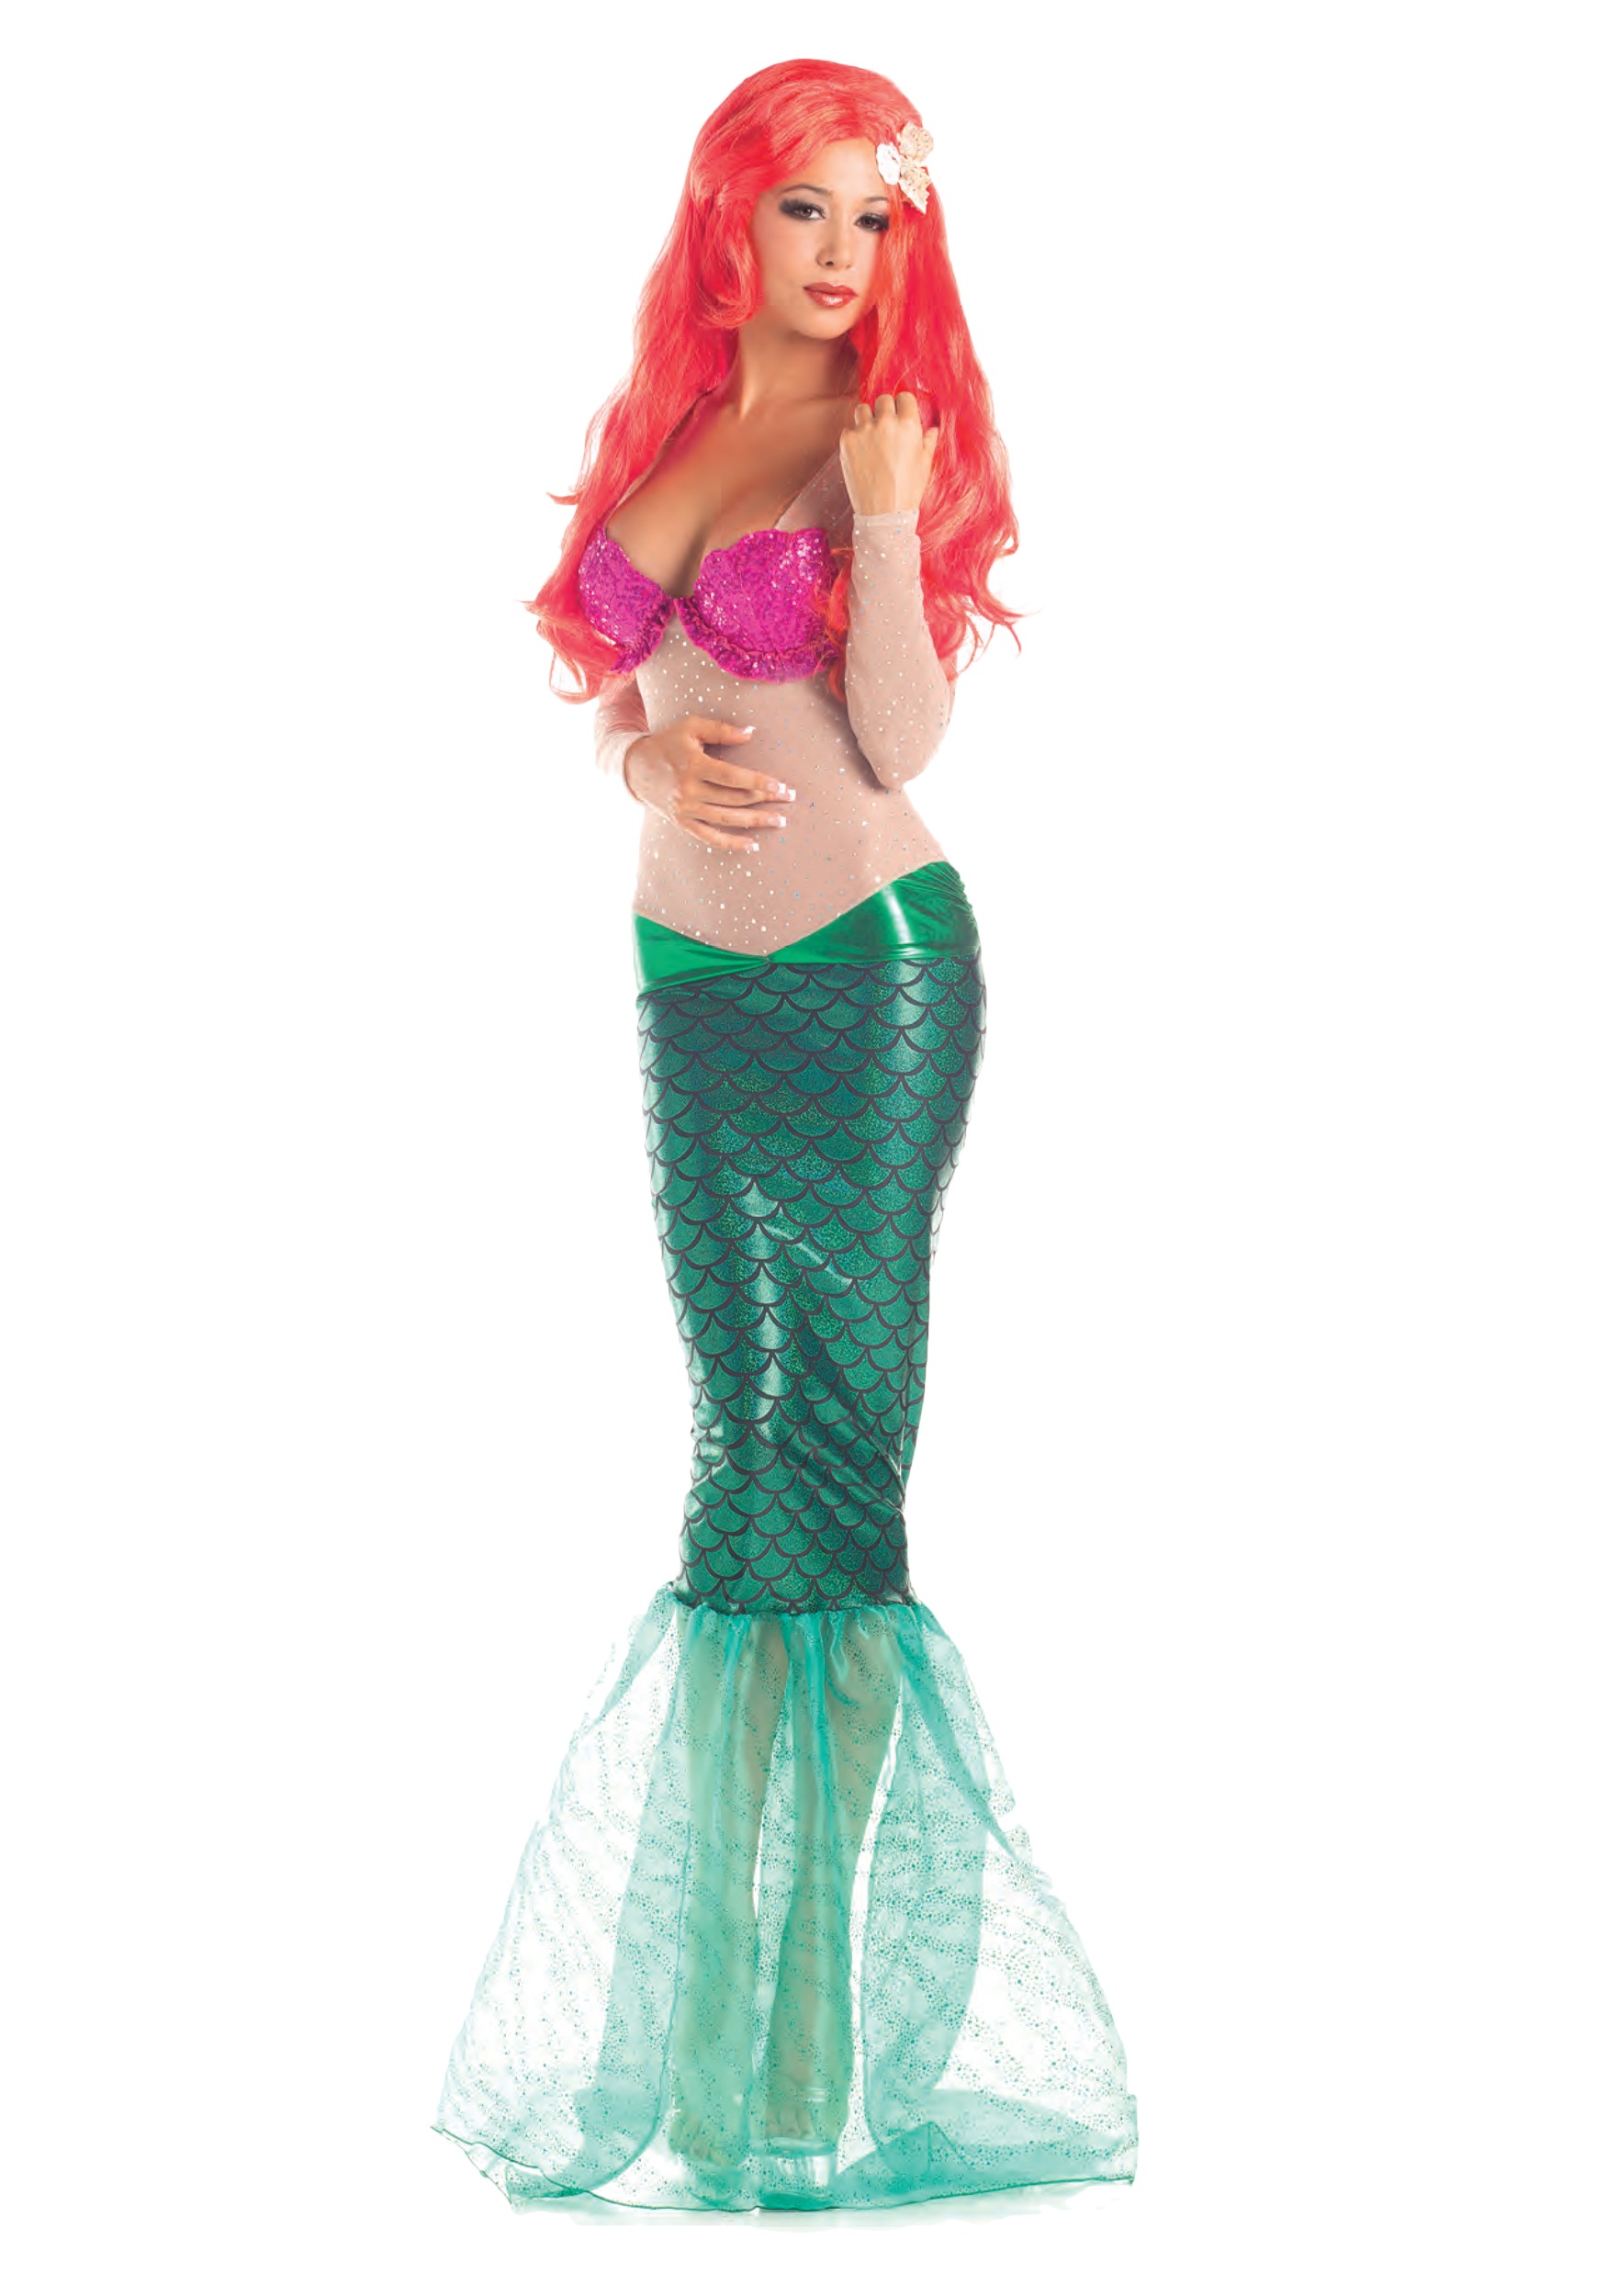 Image of Adult Sweet Mermaid Costume ID PKPK291-S